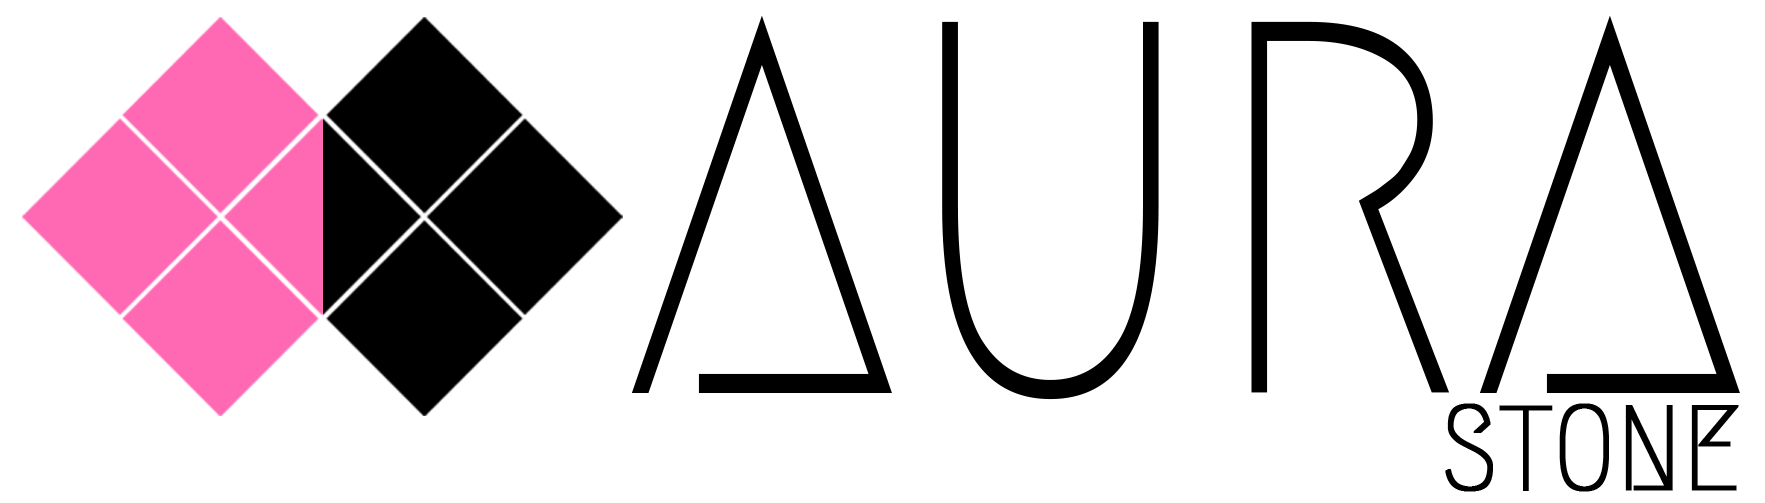 Aurastone Logo